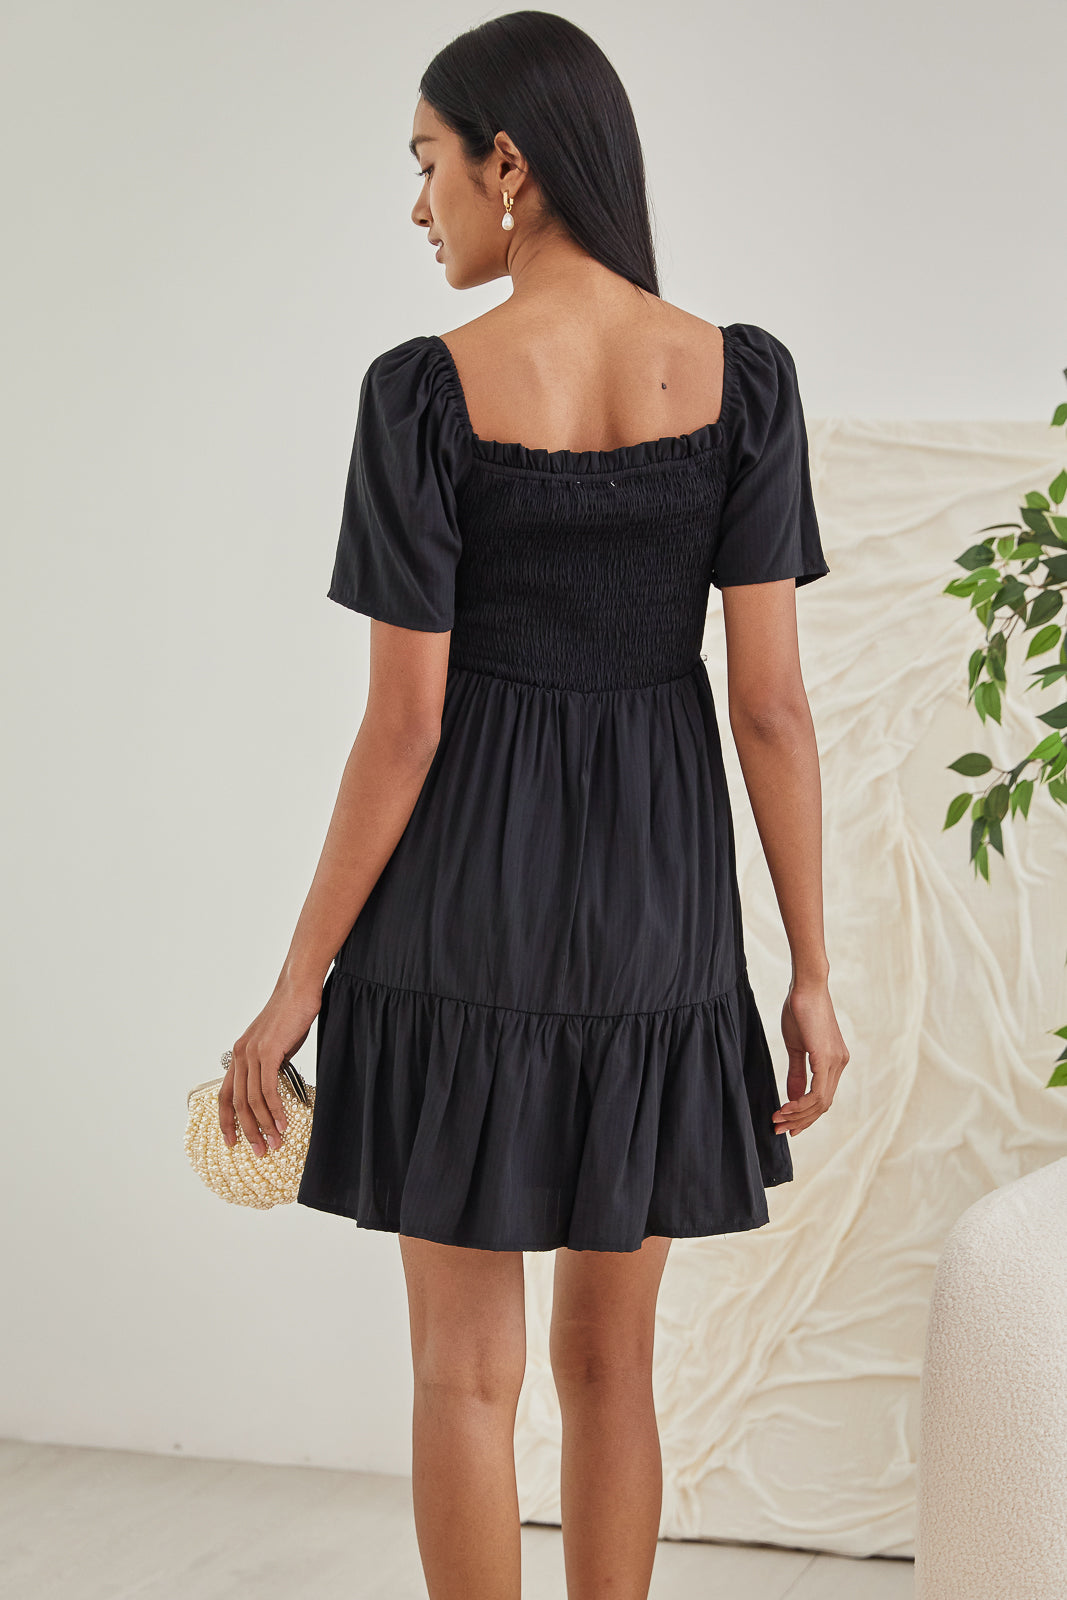 Mabel Mini Smocked Dress in Black